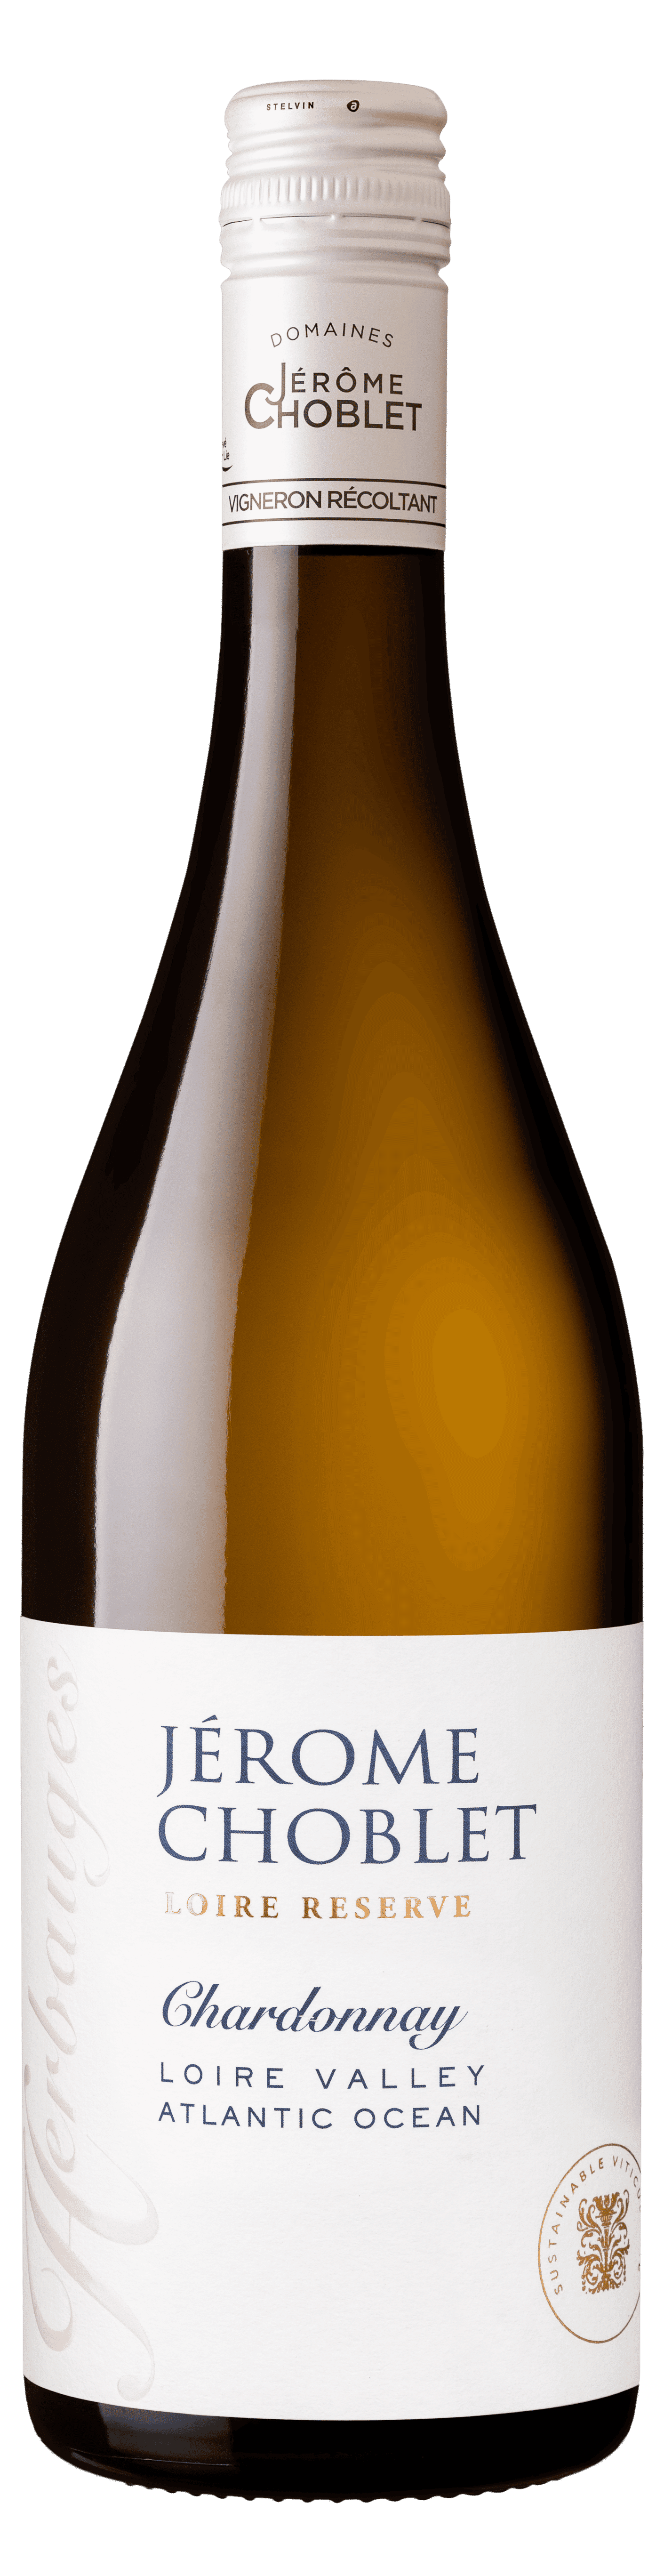 Vin blanc - IGP Val de Loire Blanc